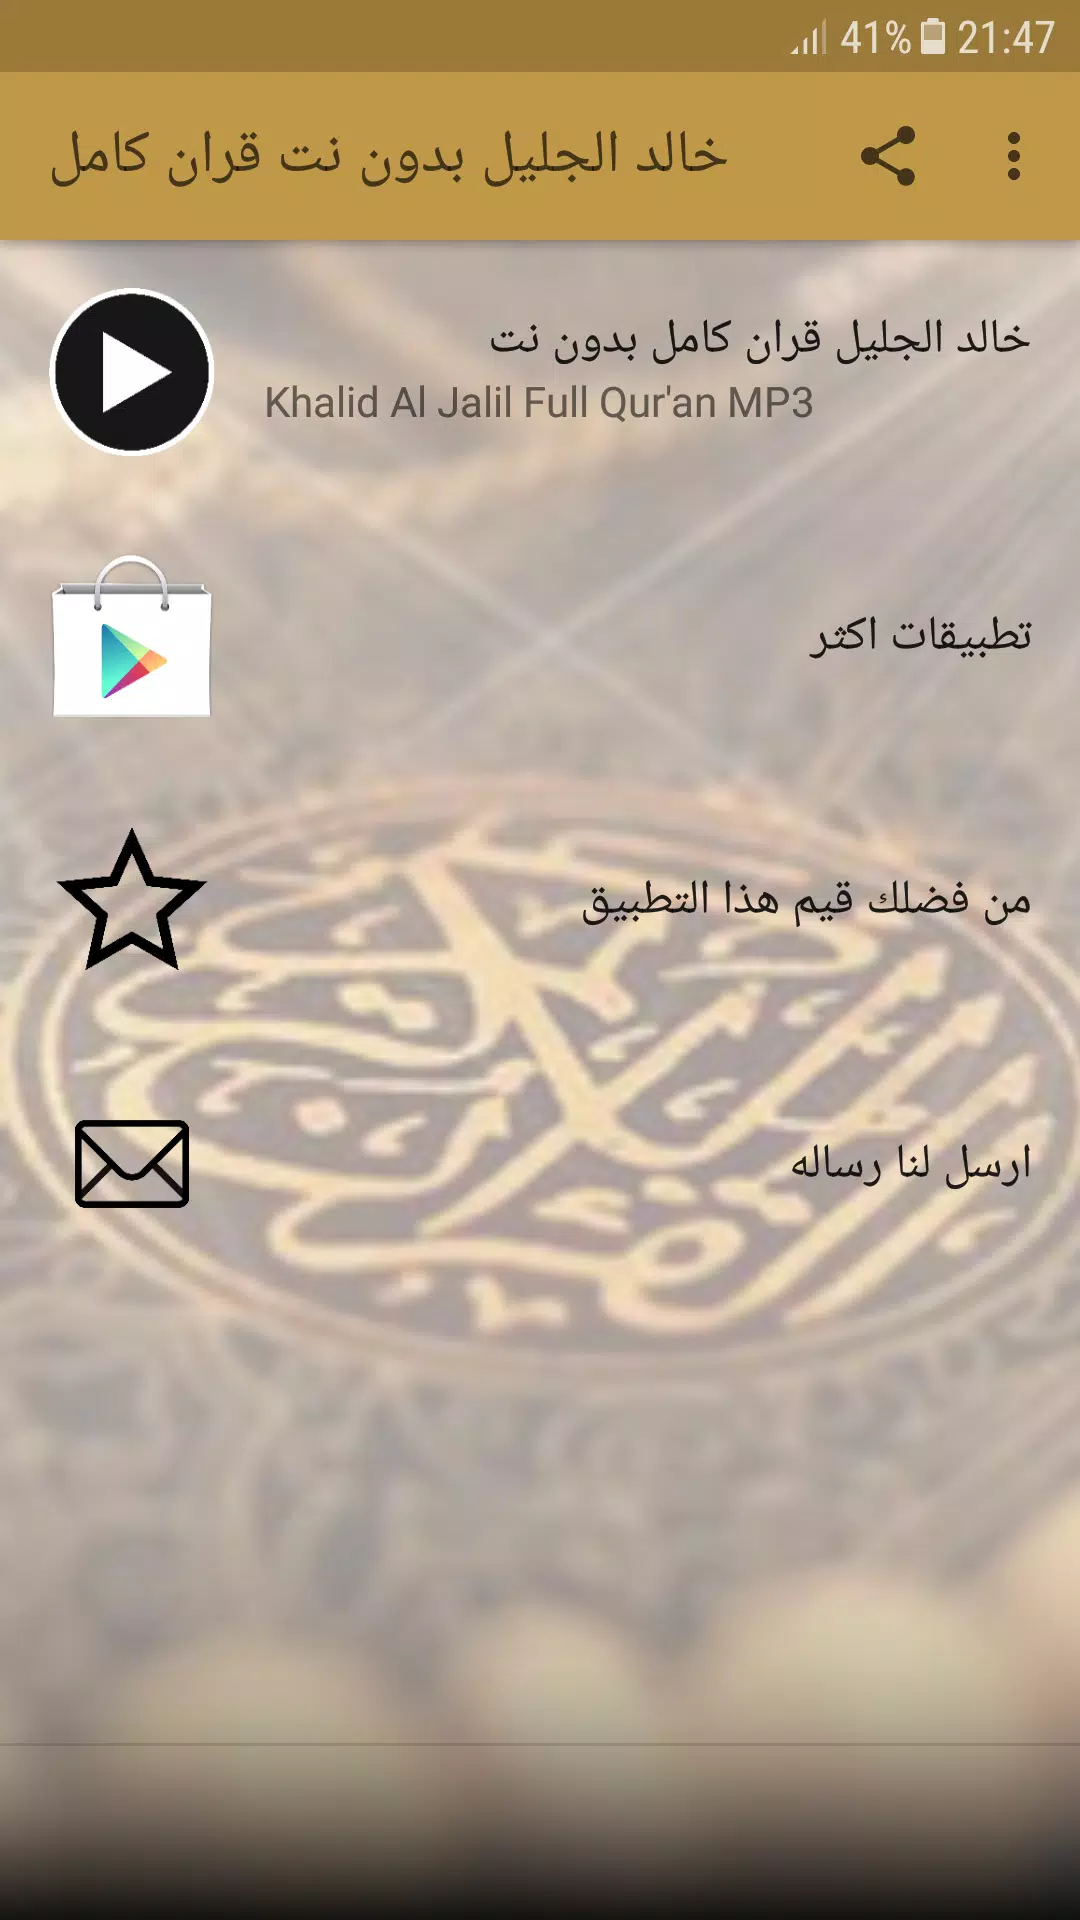 khalid al jalil full quran offline APK for Android Download